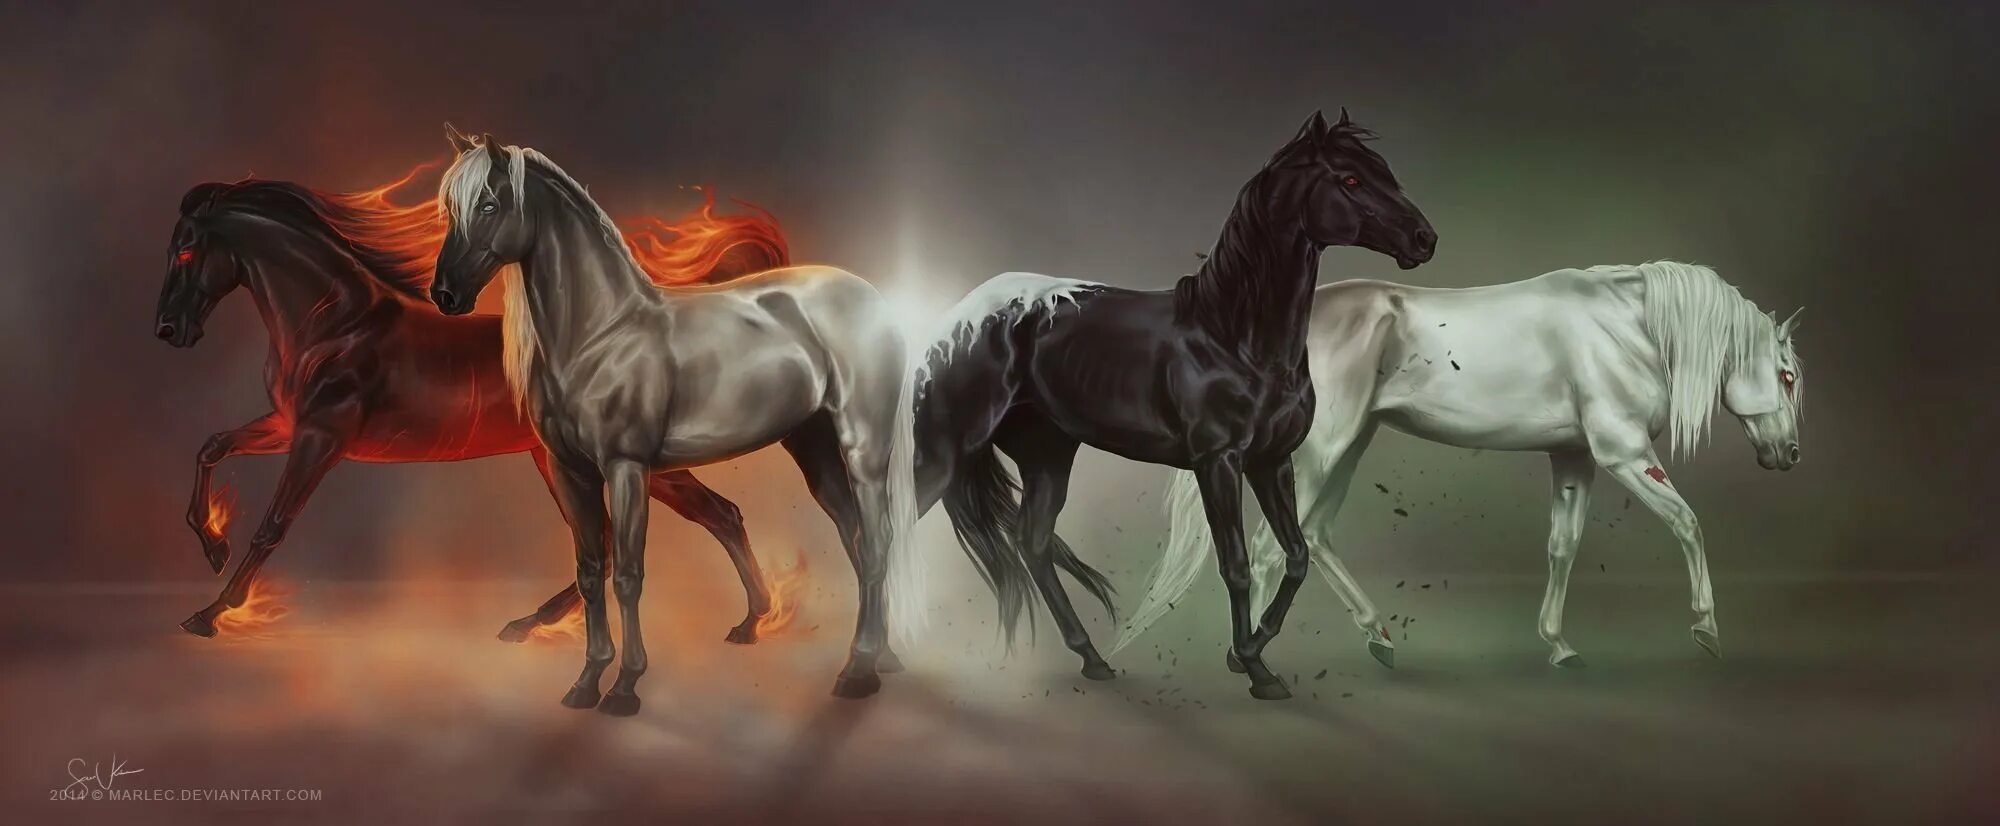 Четверо коней. 4 Всадника апокалипсиса на конях. Найтмар лошадь. Джордж Уоттс всадники апокалипсиса. Rdr лошади апокалипсиса.